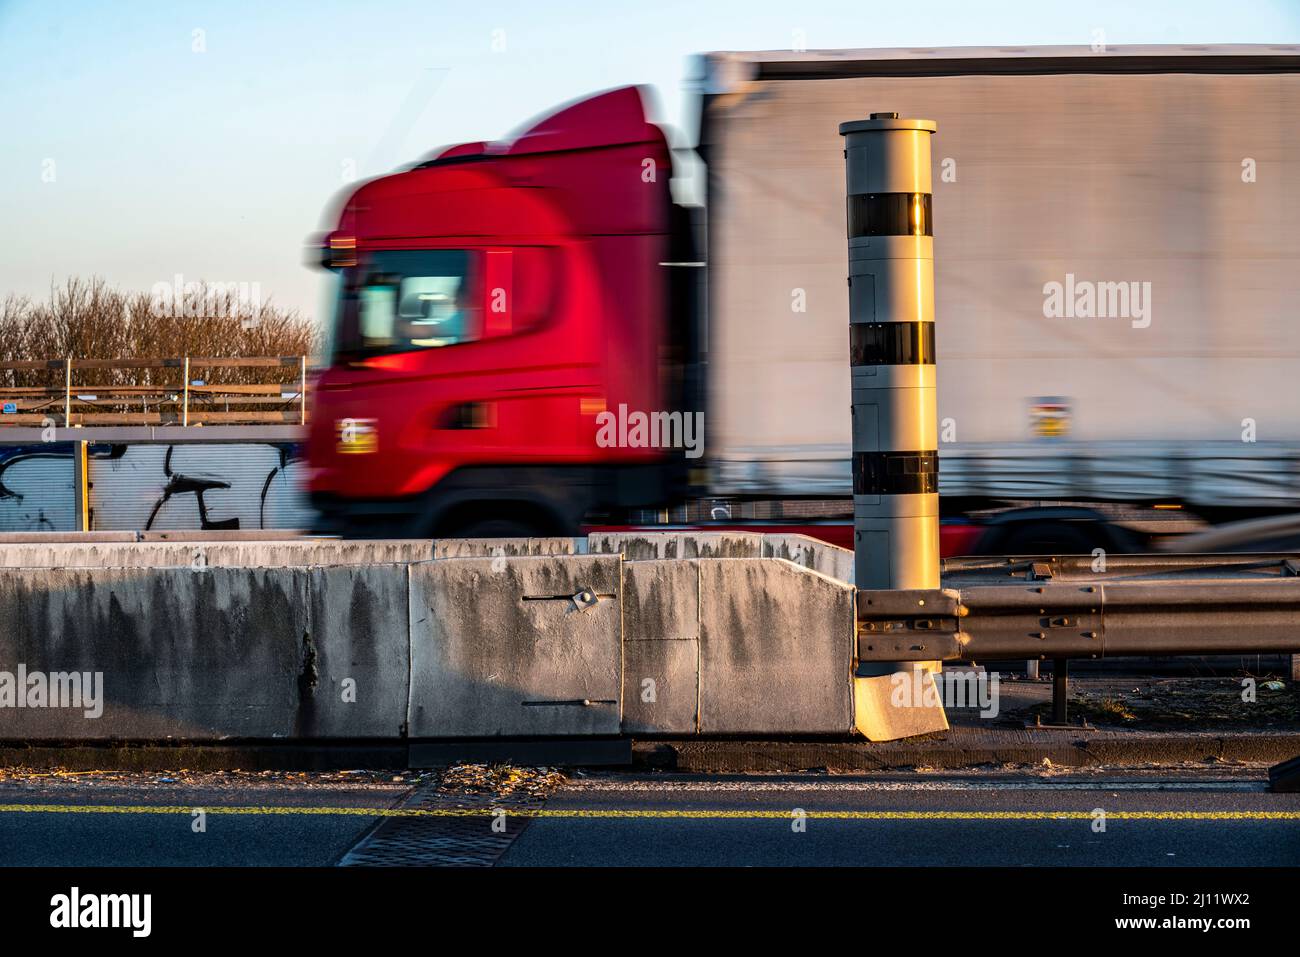 Caméra de vitesse, surveillance radar de la vitesse, sur l'autoroute A40, sur le pont Neuenkamp Rhin, Duisburg, NRW, Allemagne, caméra de vitesse, surveillance de la vitesse radar Banque D'Images